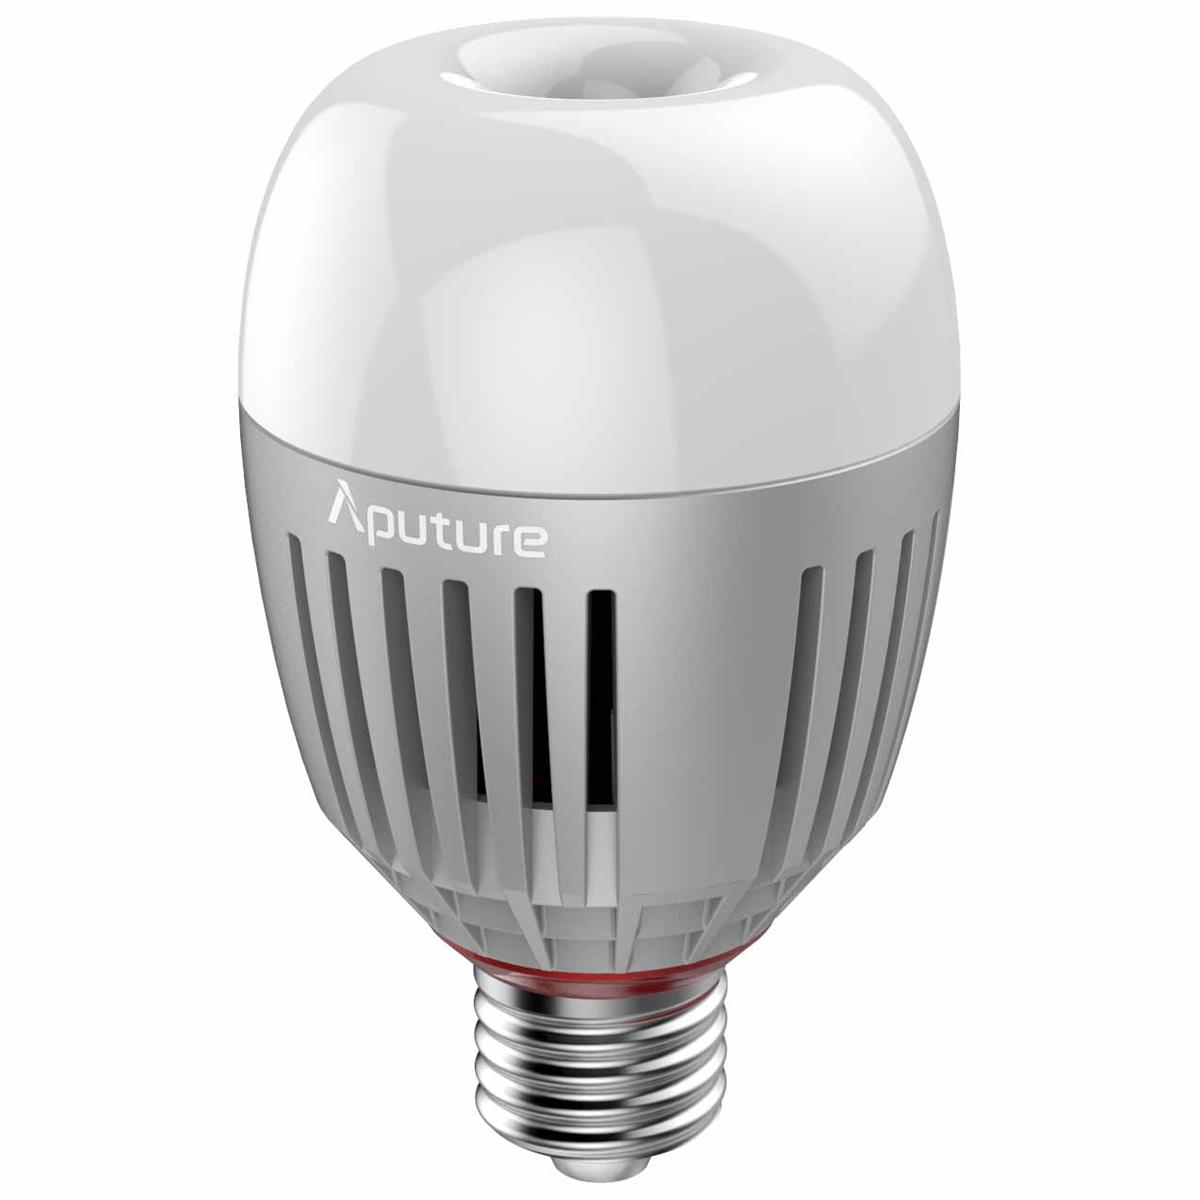 Image of Aputure Accent B7c 7W RGBWW LED Smart Bulb